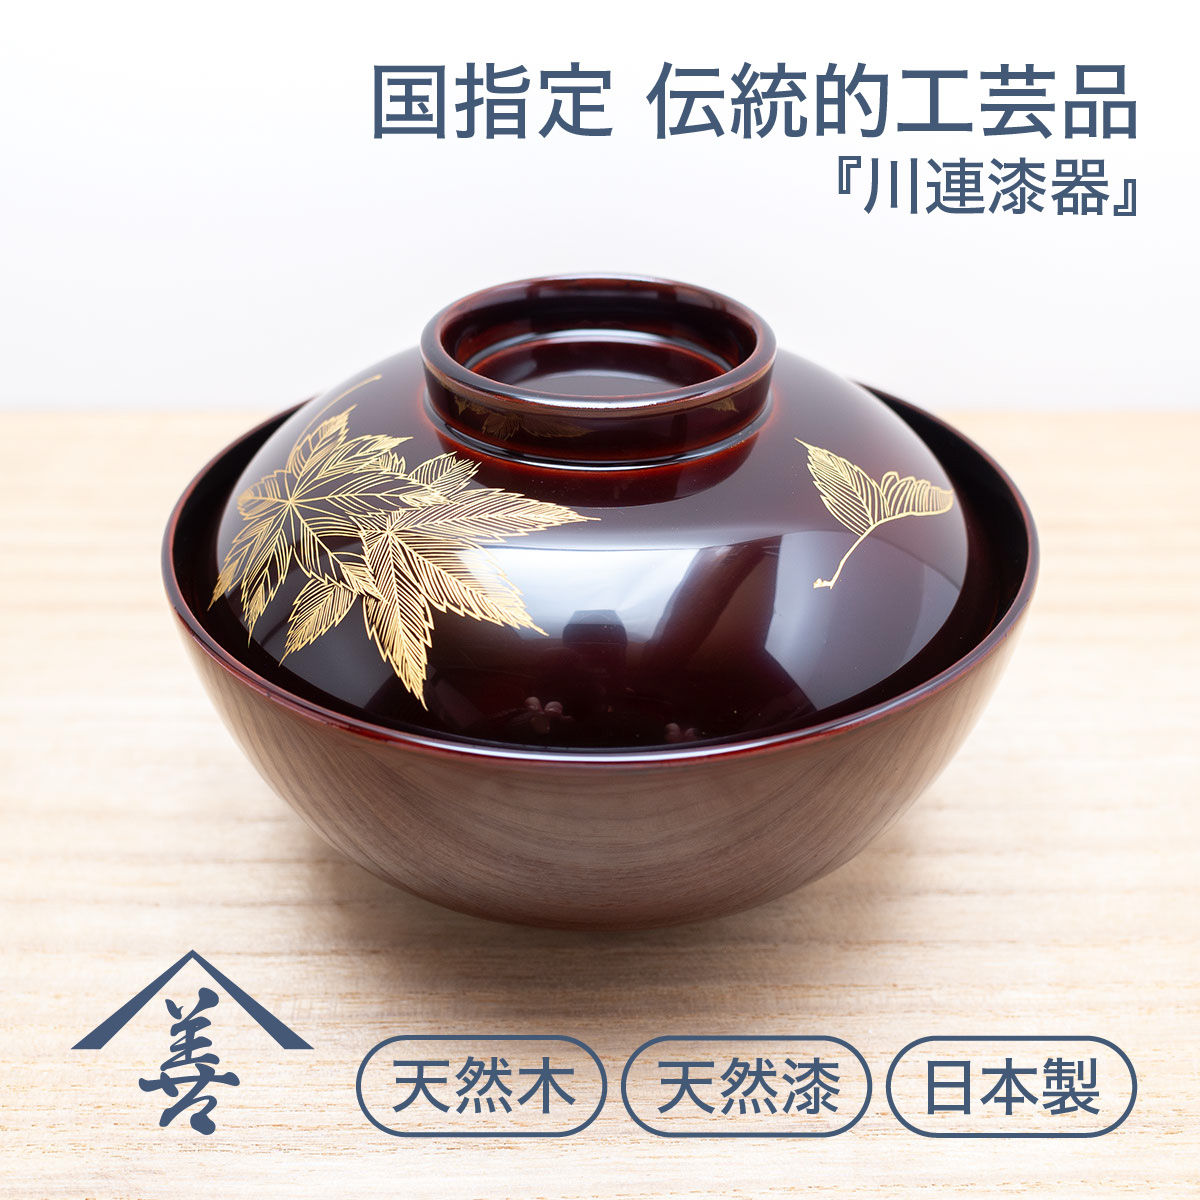 吸い物椀 吸物椀 蓋付き 吸物碗 木製 日本製 漆塗り 沈金 高級 お椀